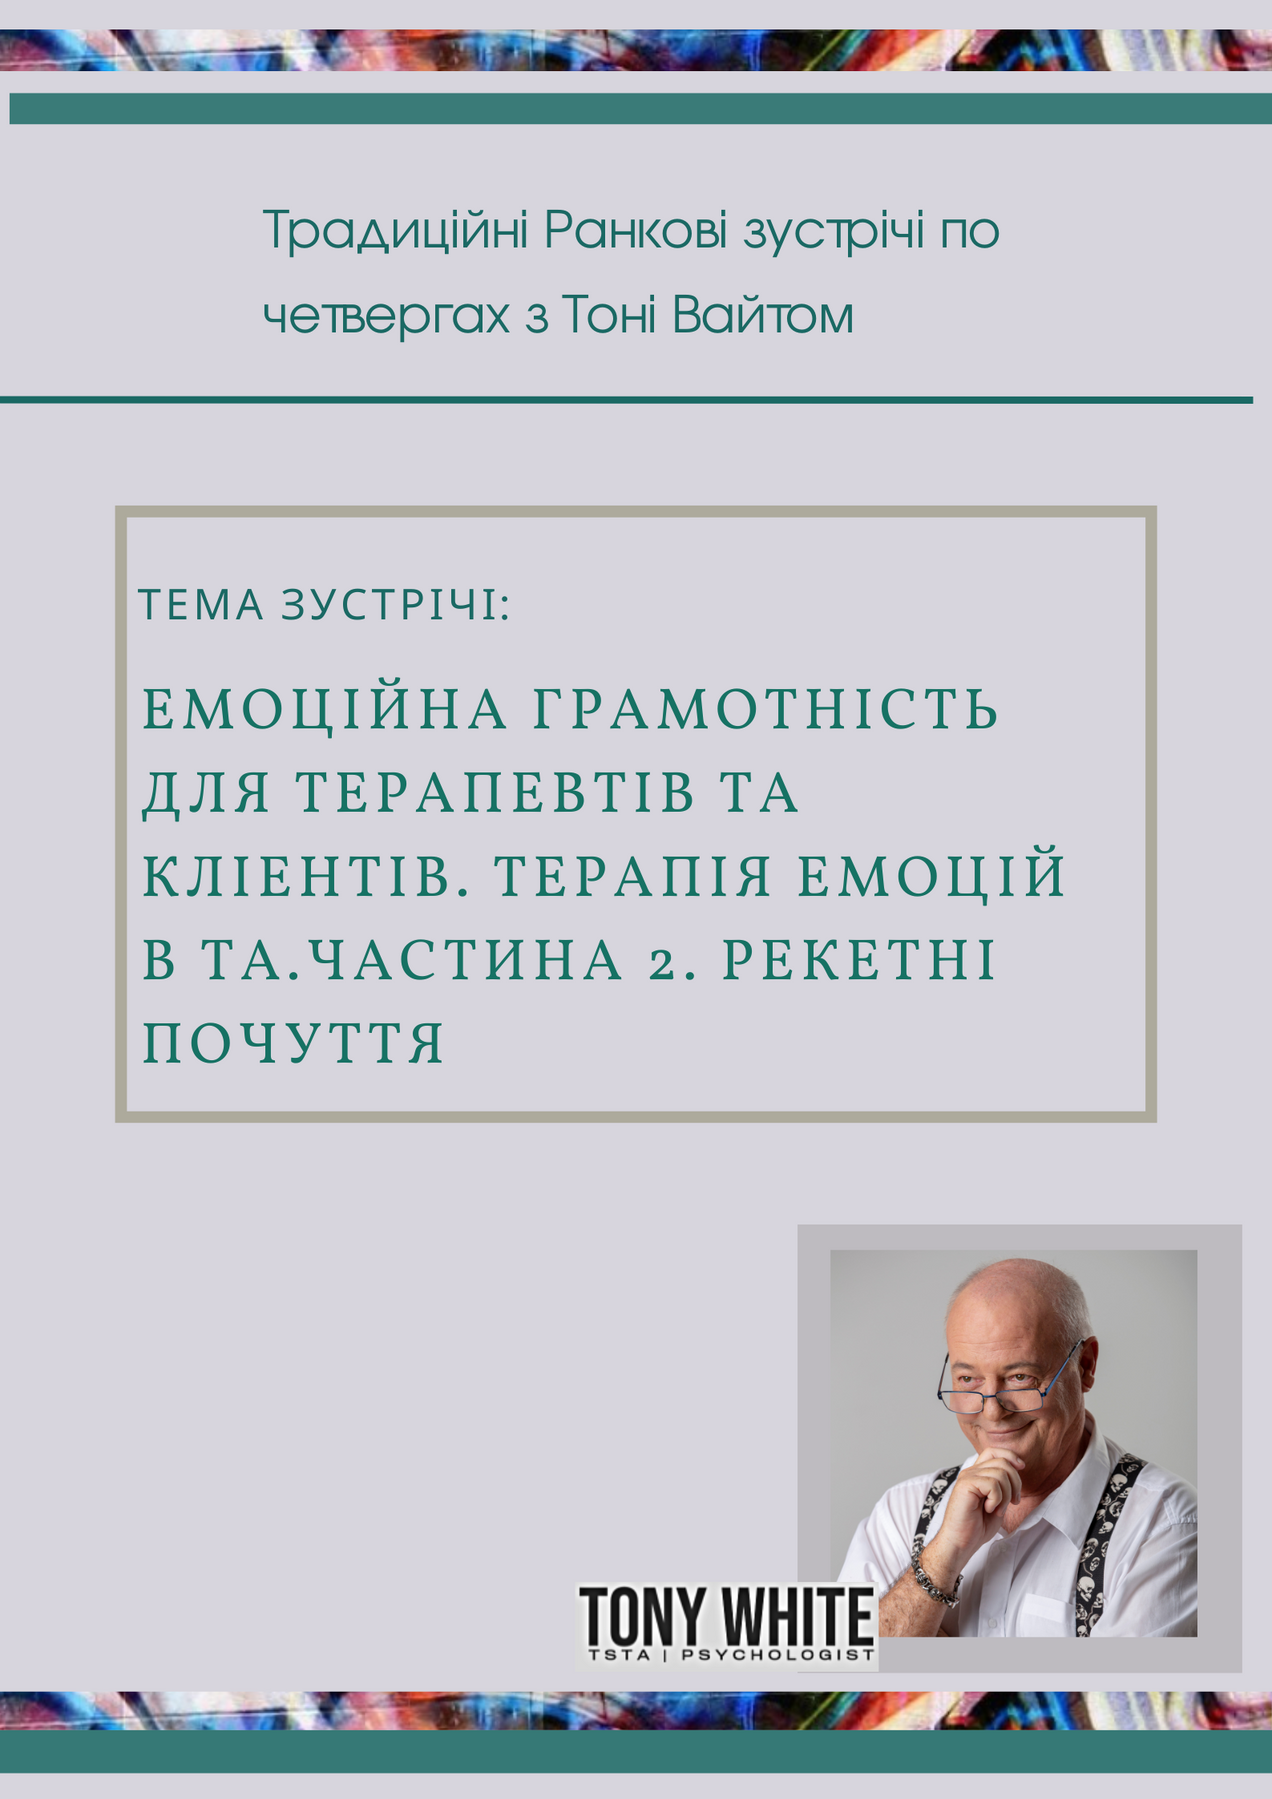 Tony White «Емоційна грамотність для терапевтів та кліентів. Терапія емоцій в ТА.Частина 2. Рекетні почуття».